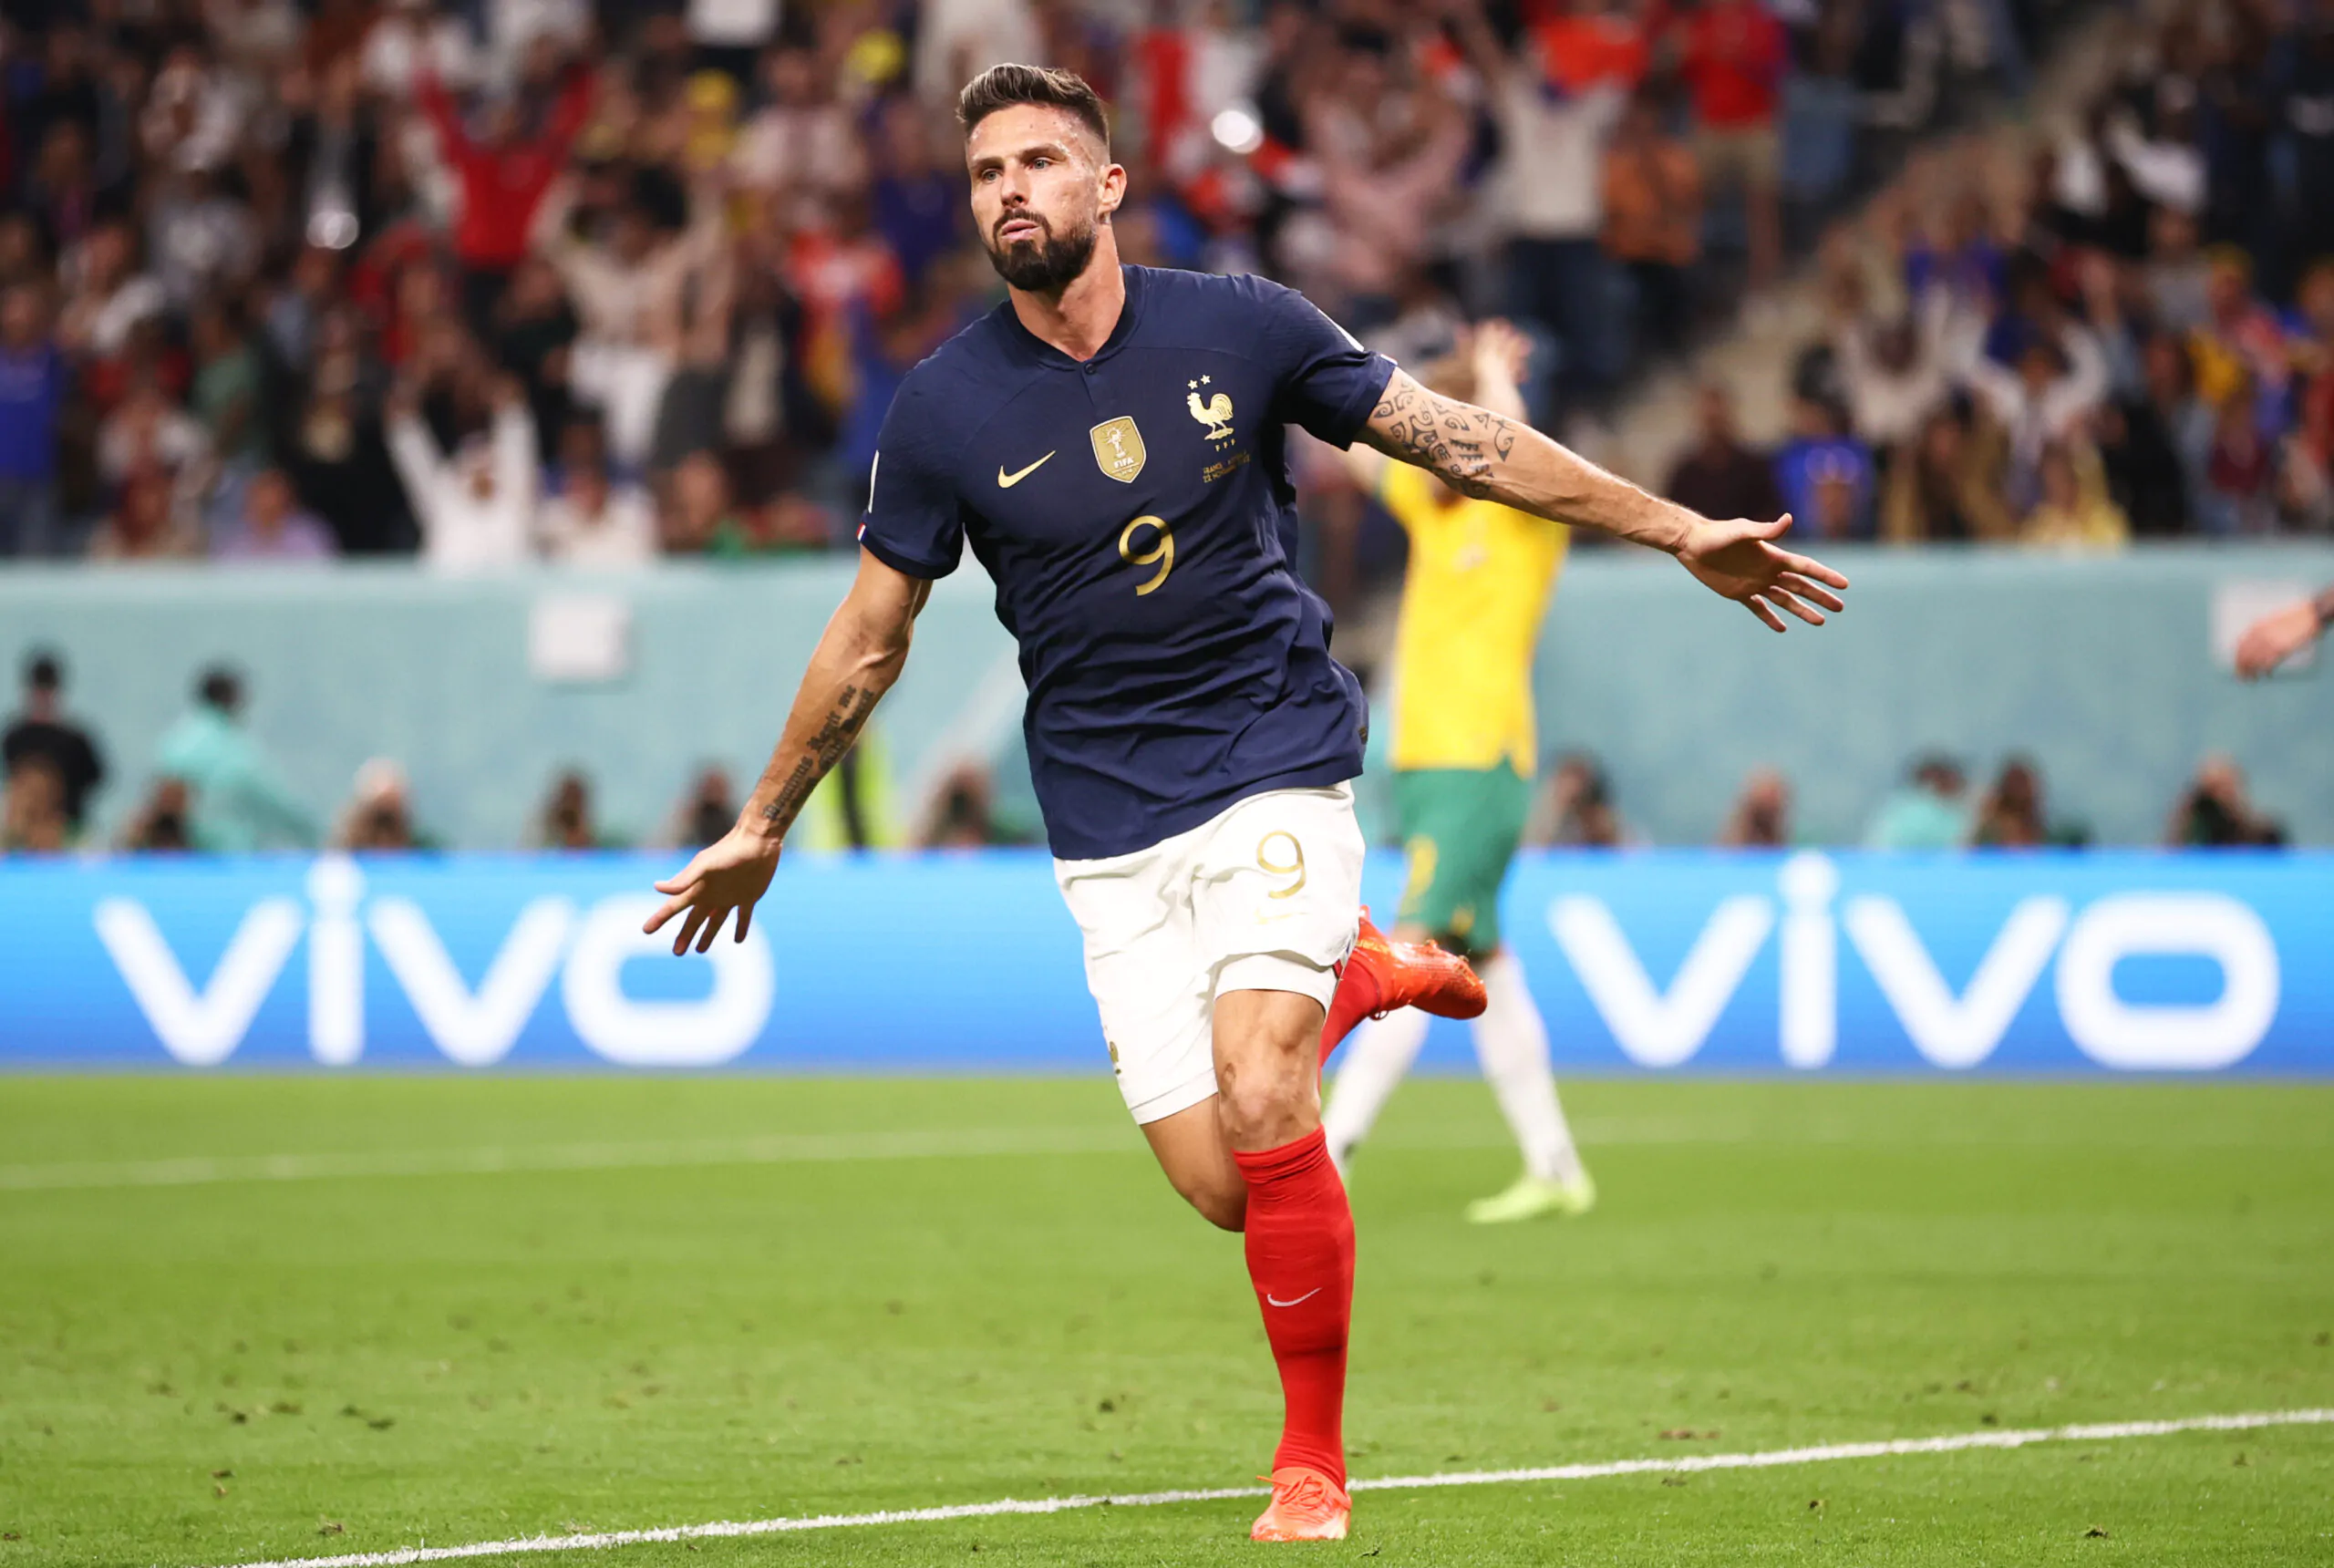 Mondiali, che parole del giocatore della Danimarca per Giroud: “È uno dei migliori al mondo”